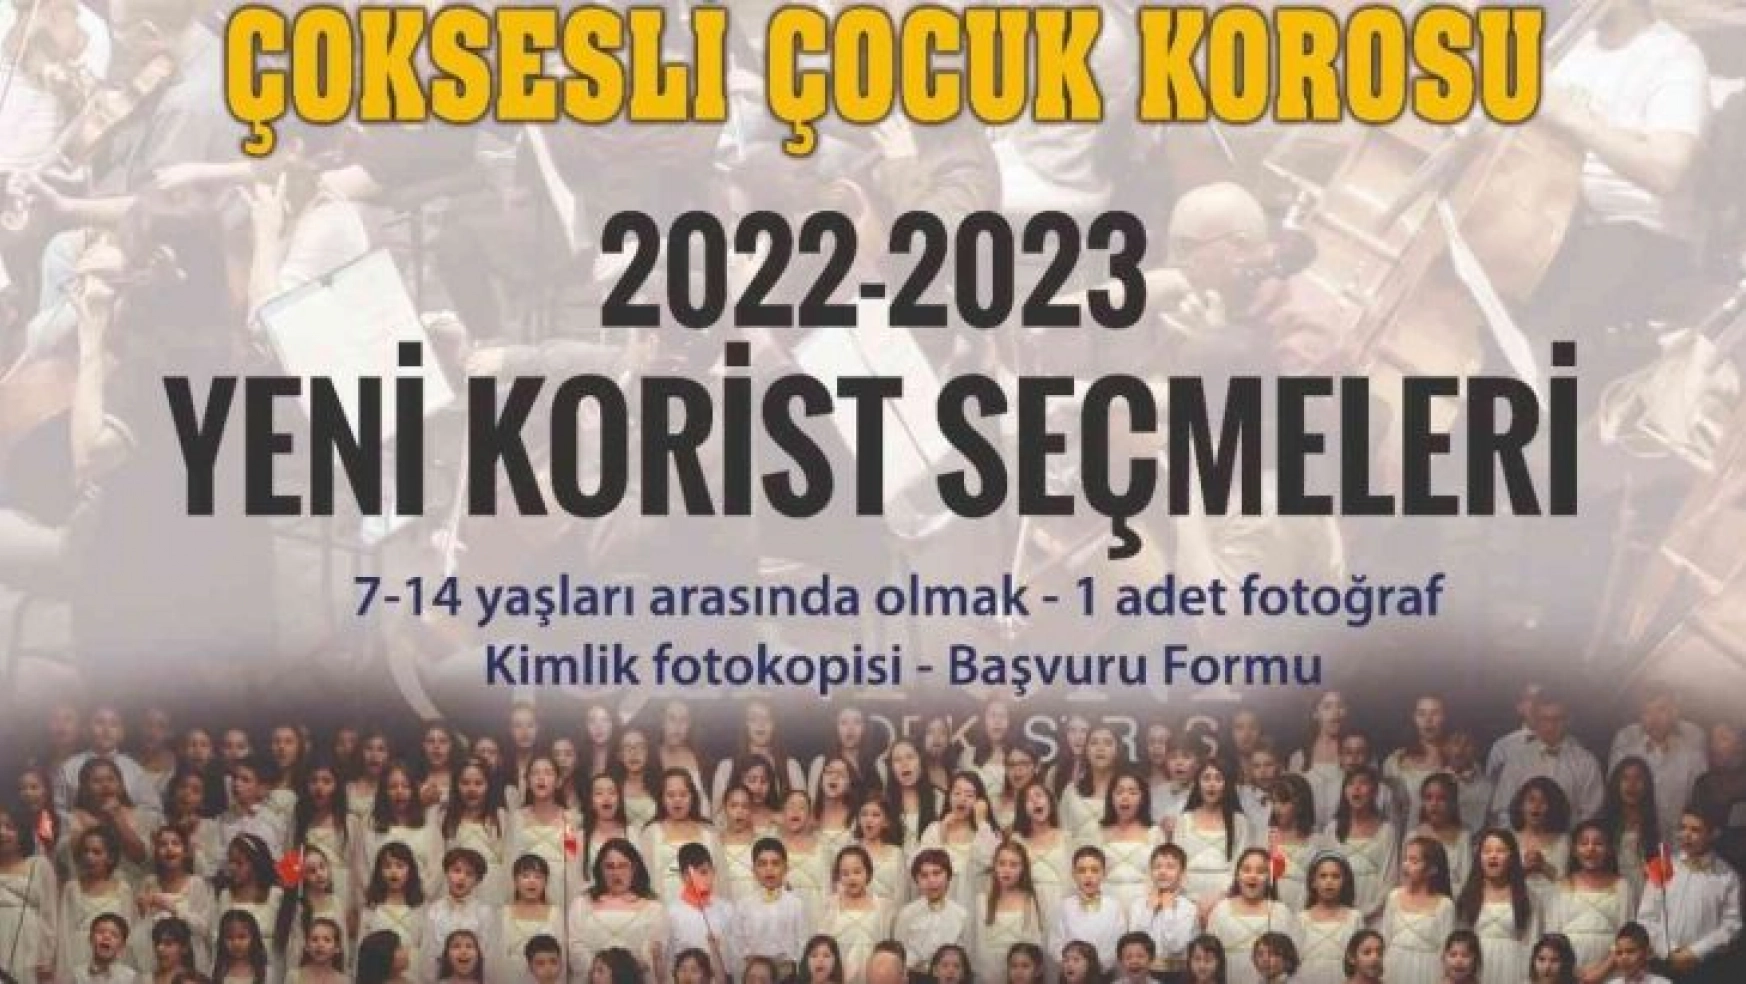 Adana'da Çoksesli Çocuk Korosu seçmeleri başlıyor